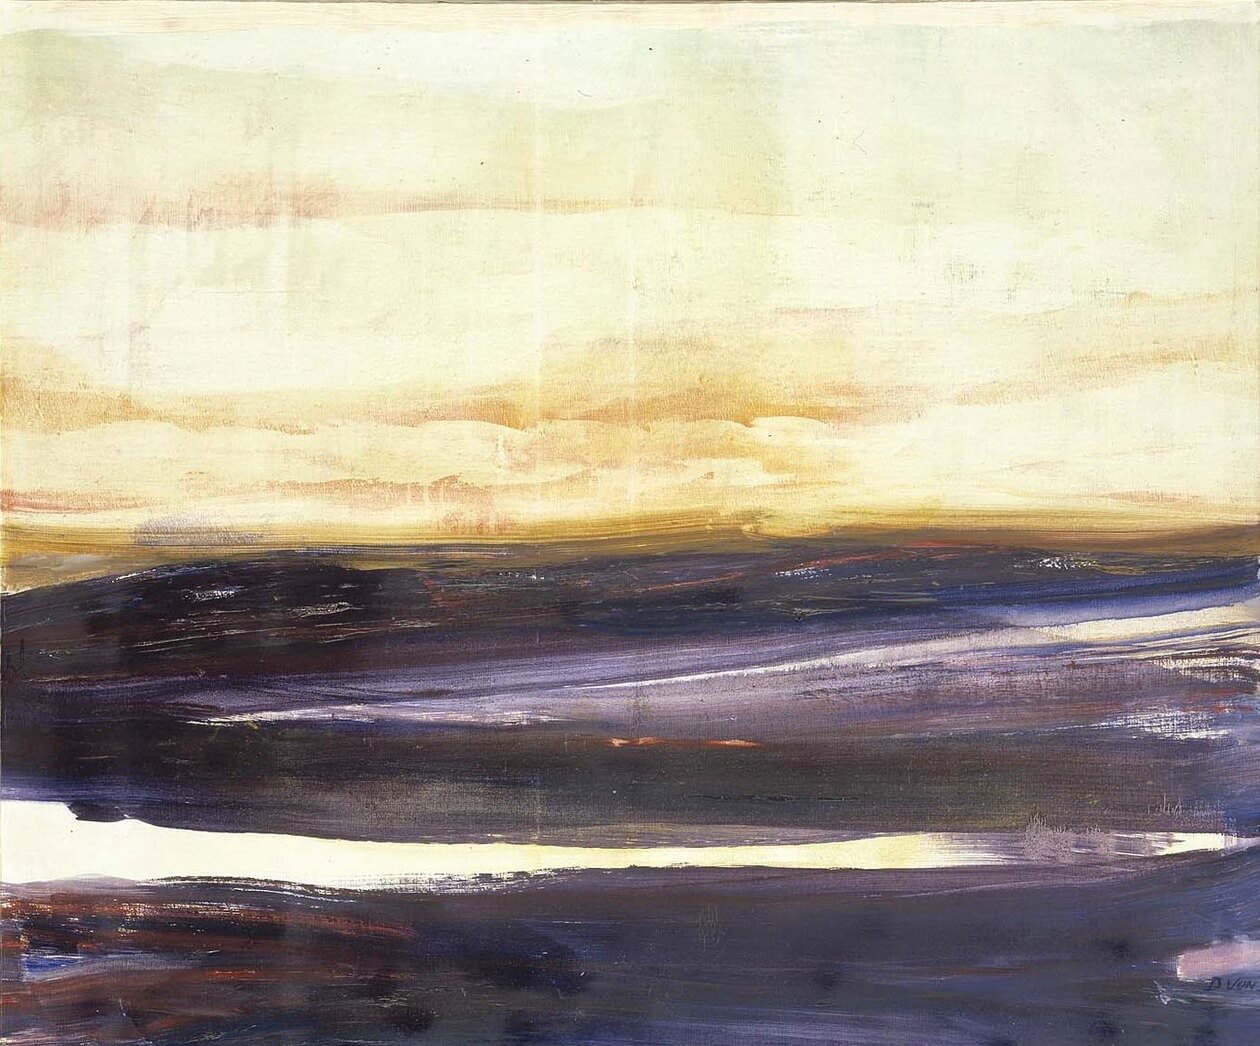 David Von Schlegell, Horizontal Blue, 1961, oil on canvas 40 x 48 in. Smithsonian American Art Museum